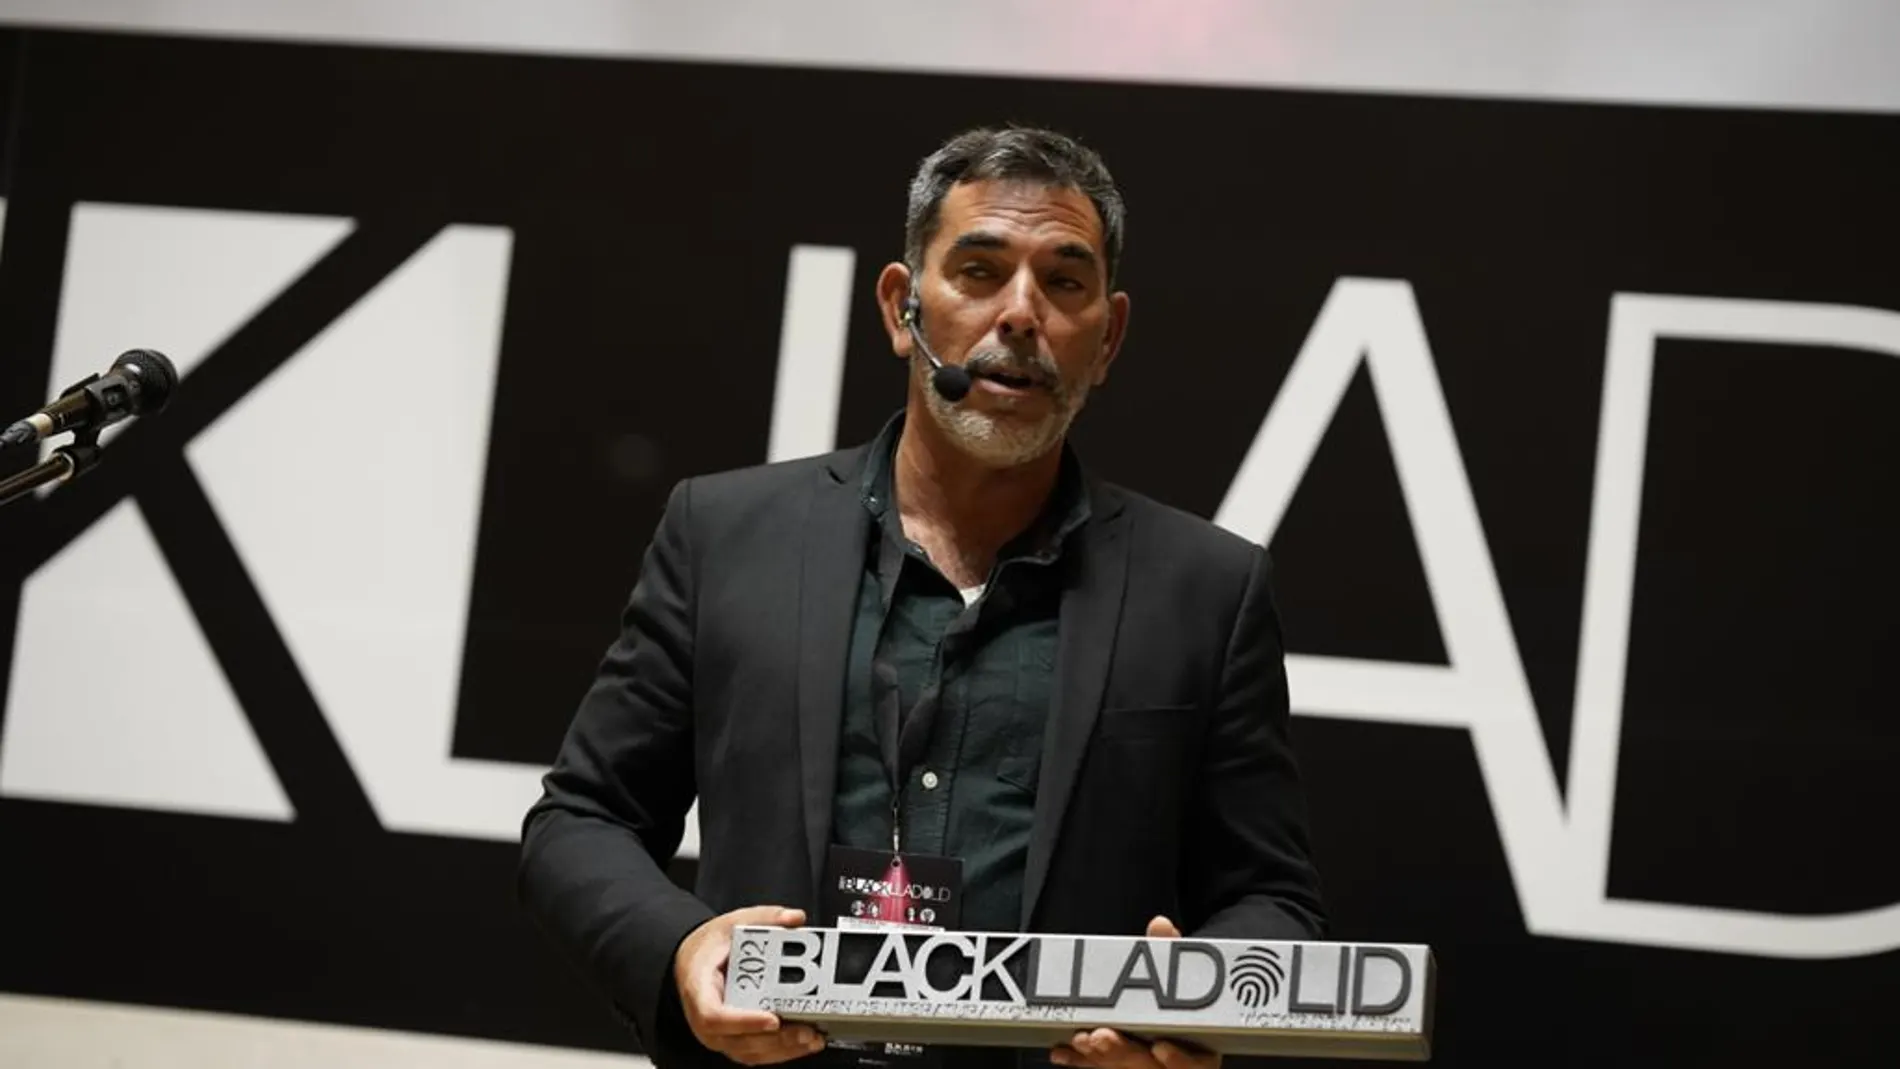 Víctor del Árbol, Premio Blacklladolid 2021